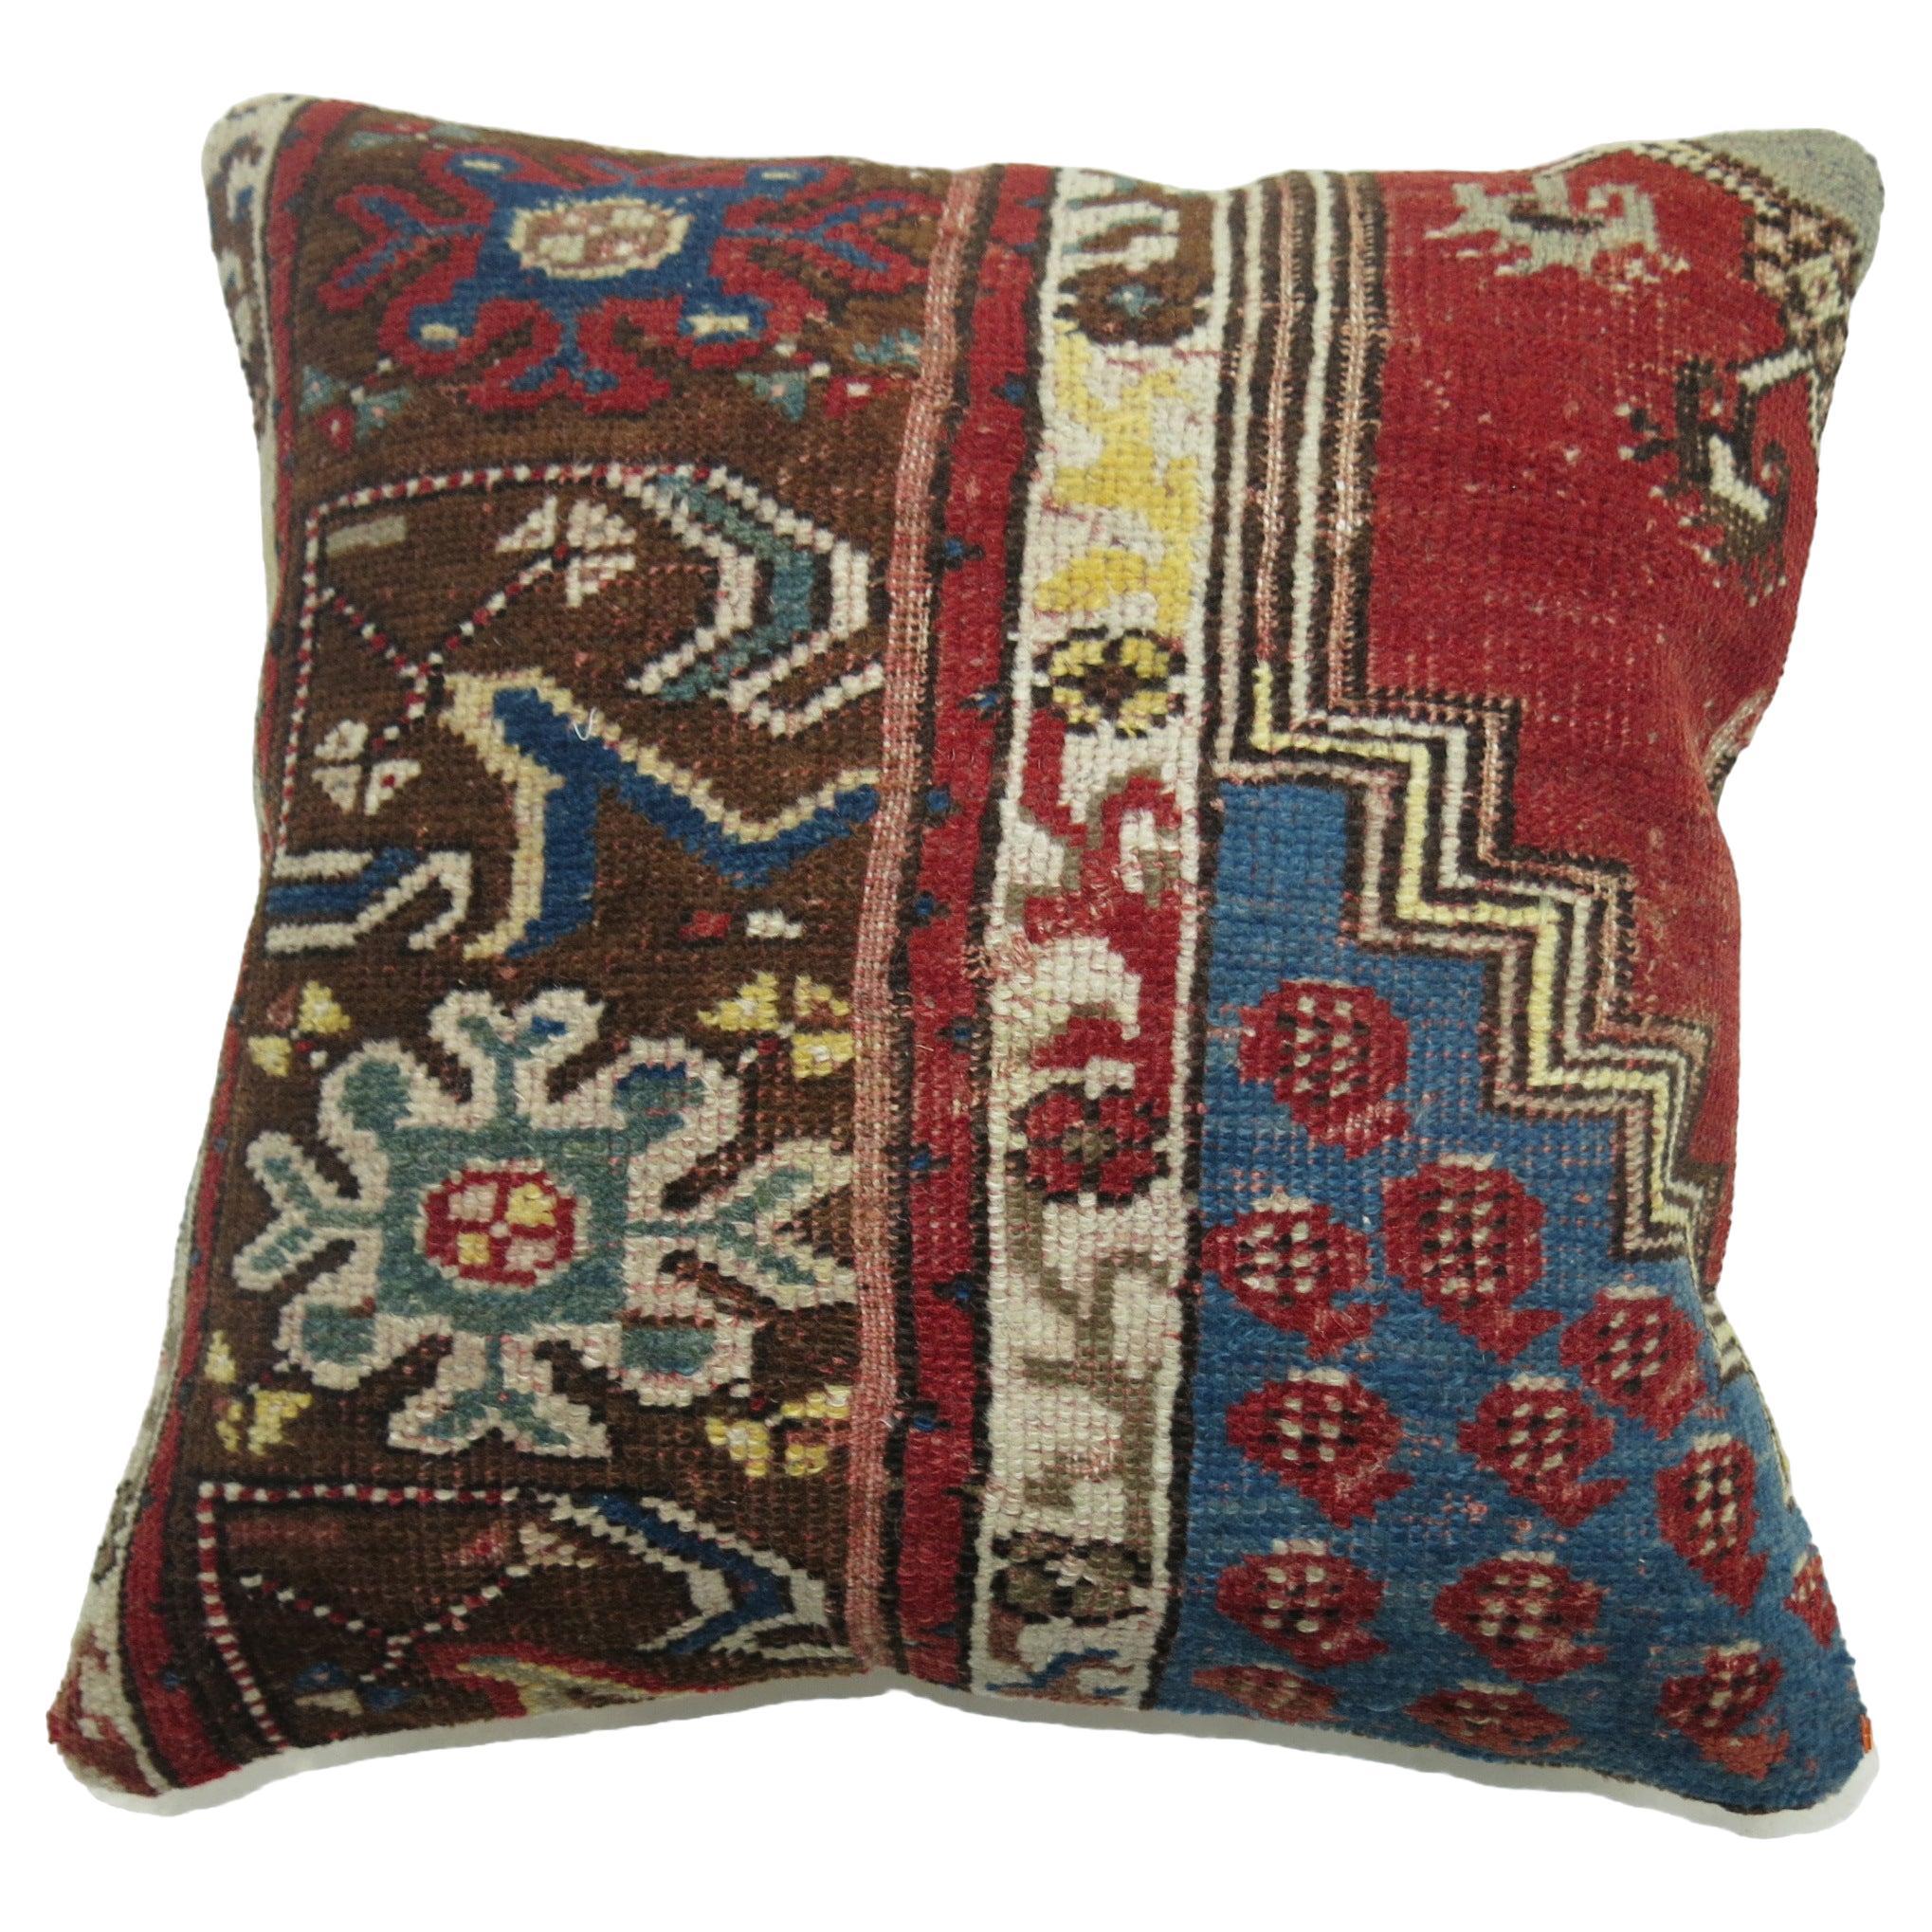 Kissen aus einem türkischen Vintage-Teppich in Rot- und Blautönen

17'' x 18''